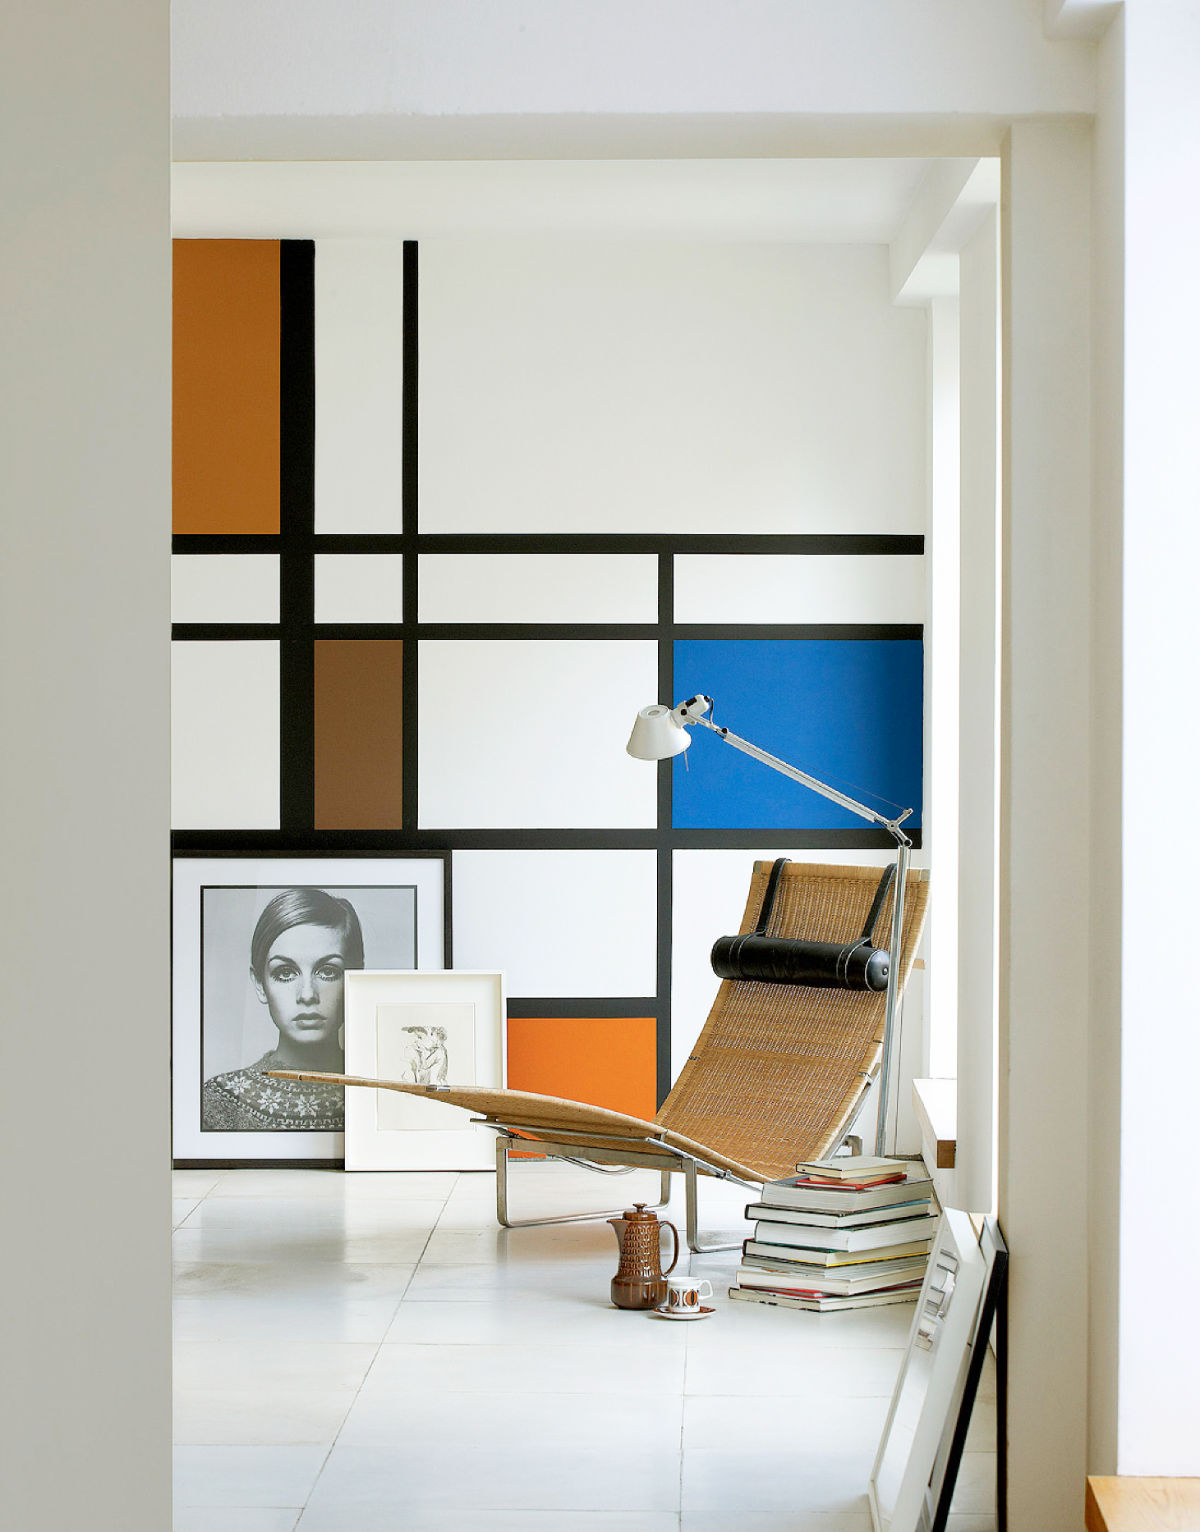 荷兰风格派(De Stijl)室内设计作品欣赏